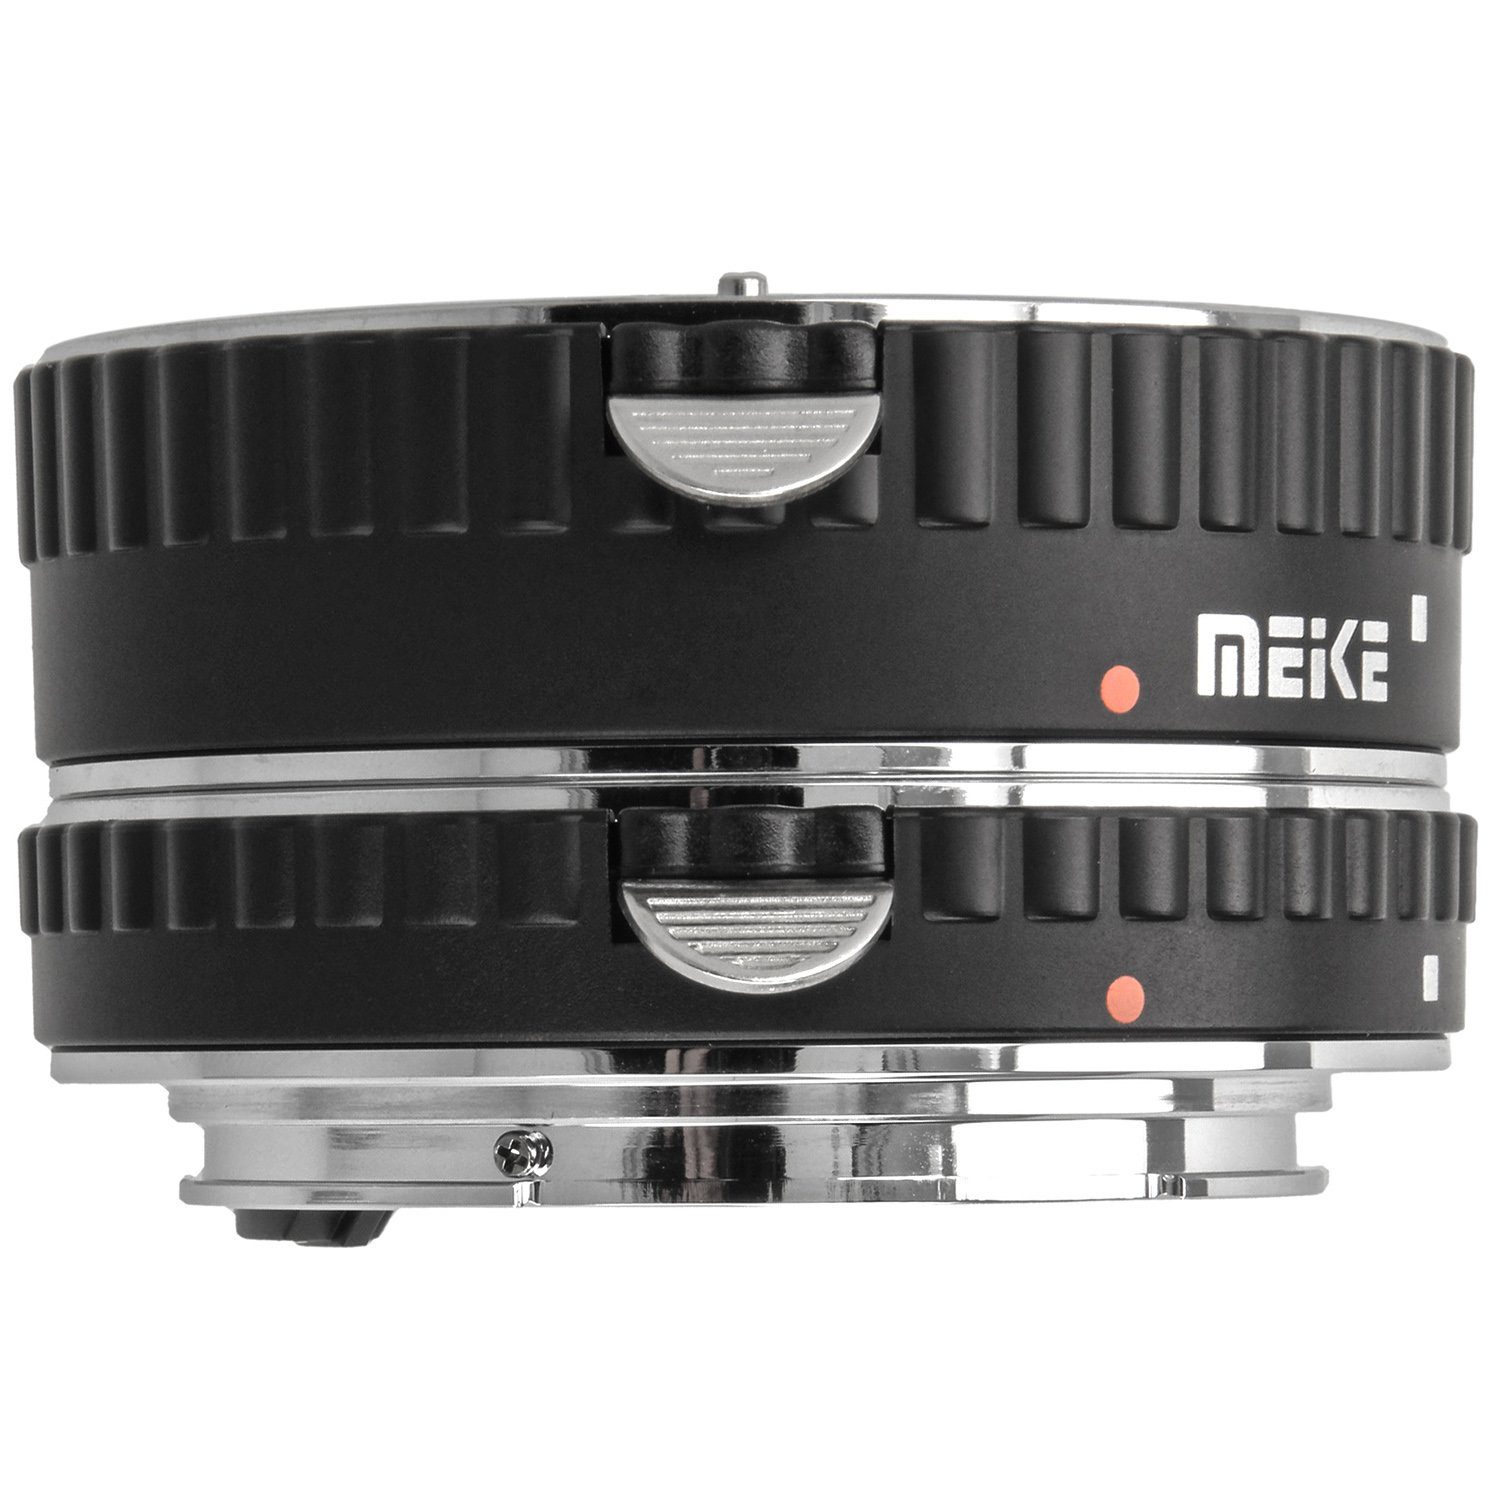 Zwischenringe für 3-teilig Canon Makrofotos Automatik für Makroobjektiv 31/21/13mm Meike